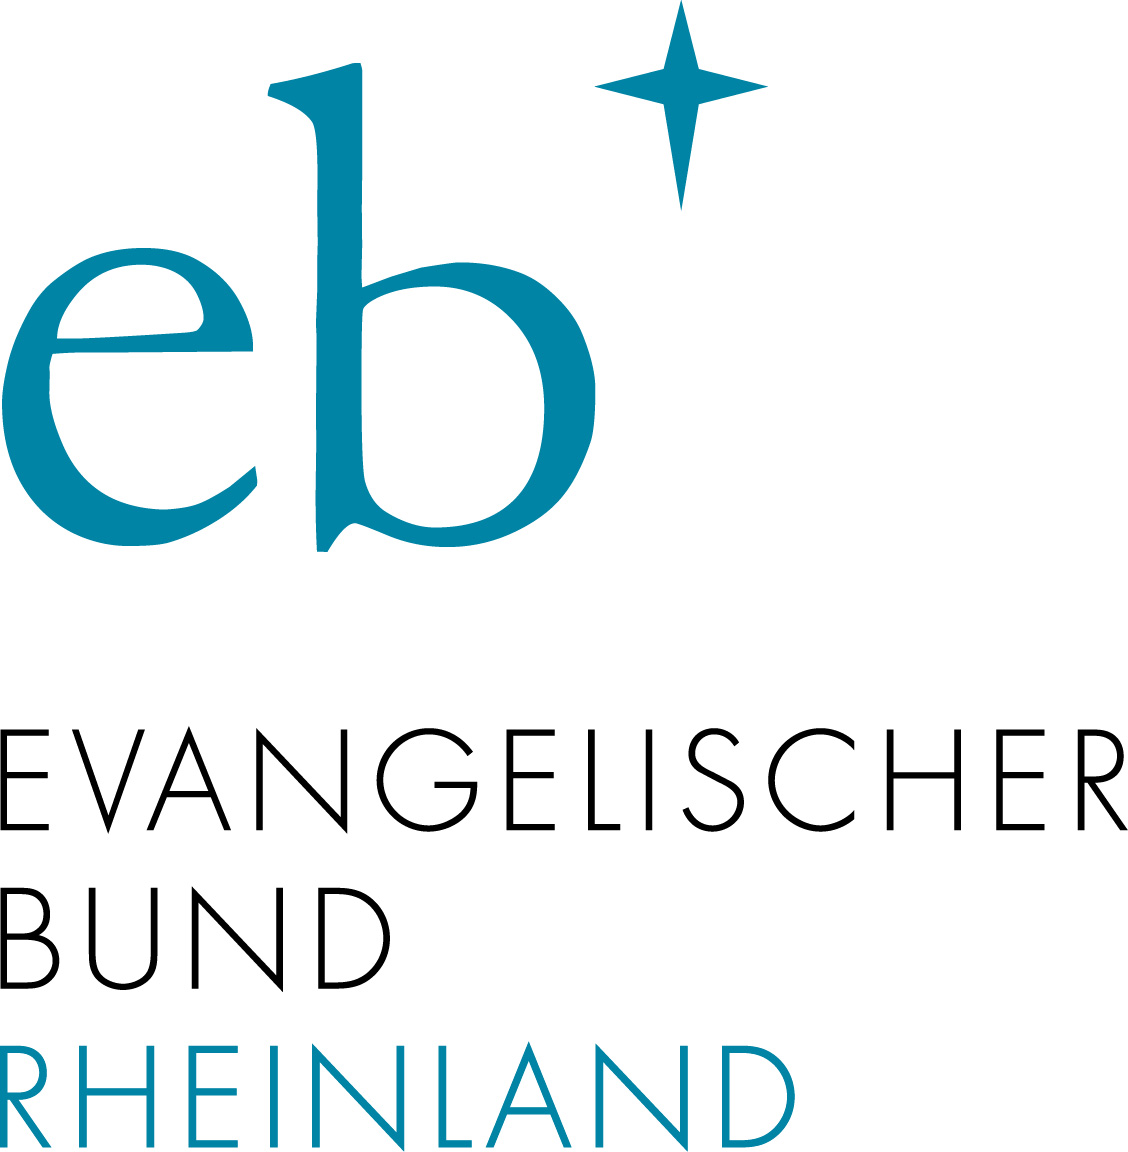 Evangelischer Bund Rheinland e. V.